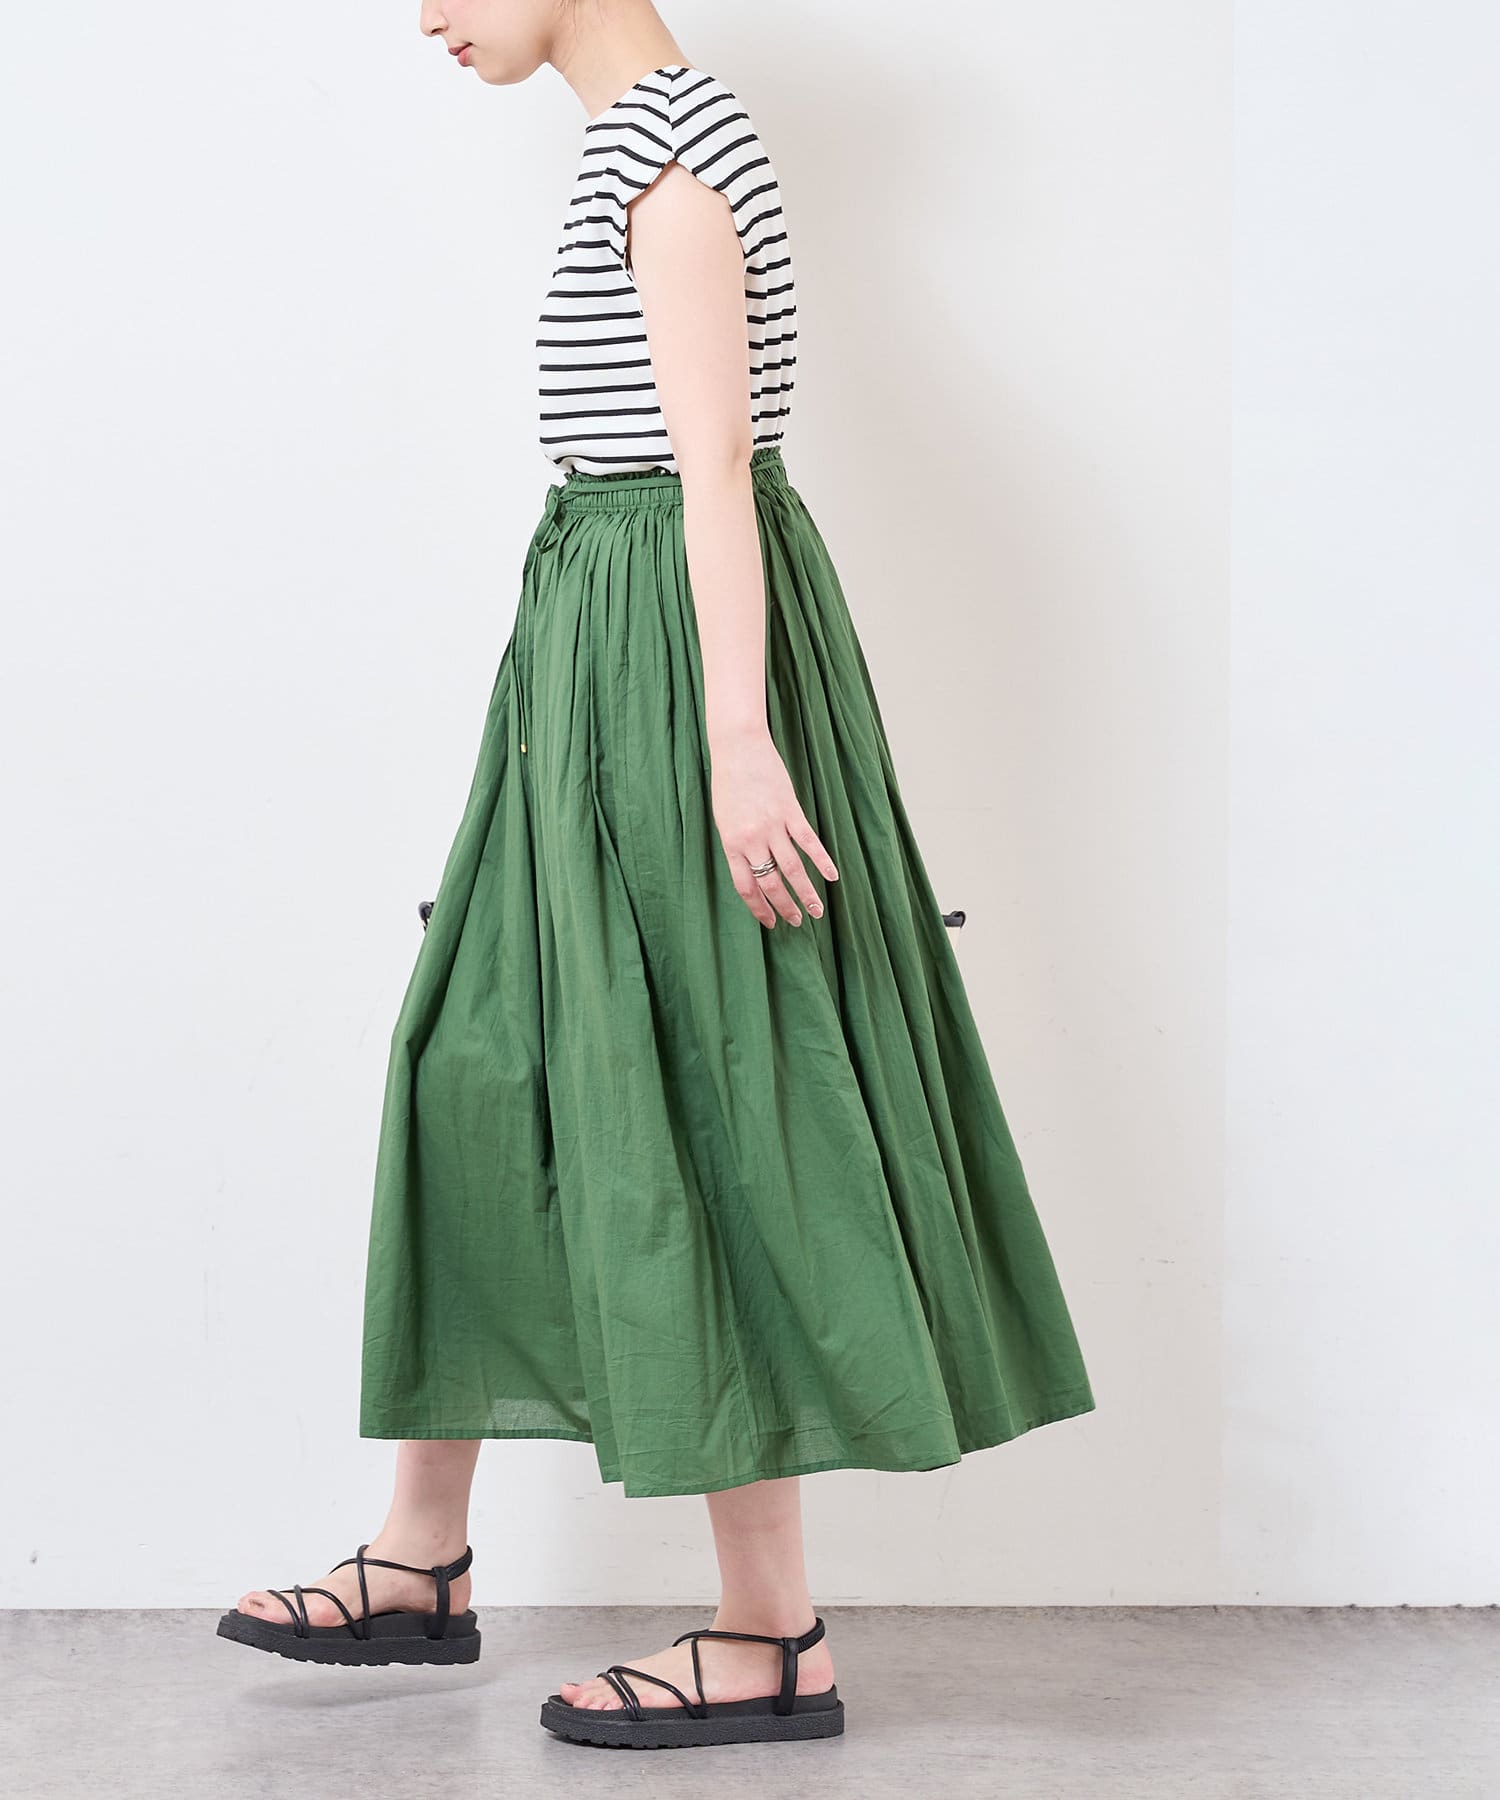 natural couture(ナチュラルクチュール) ギャザーフレアカラースカート